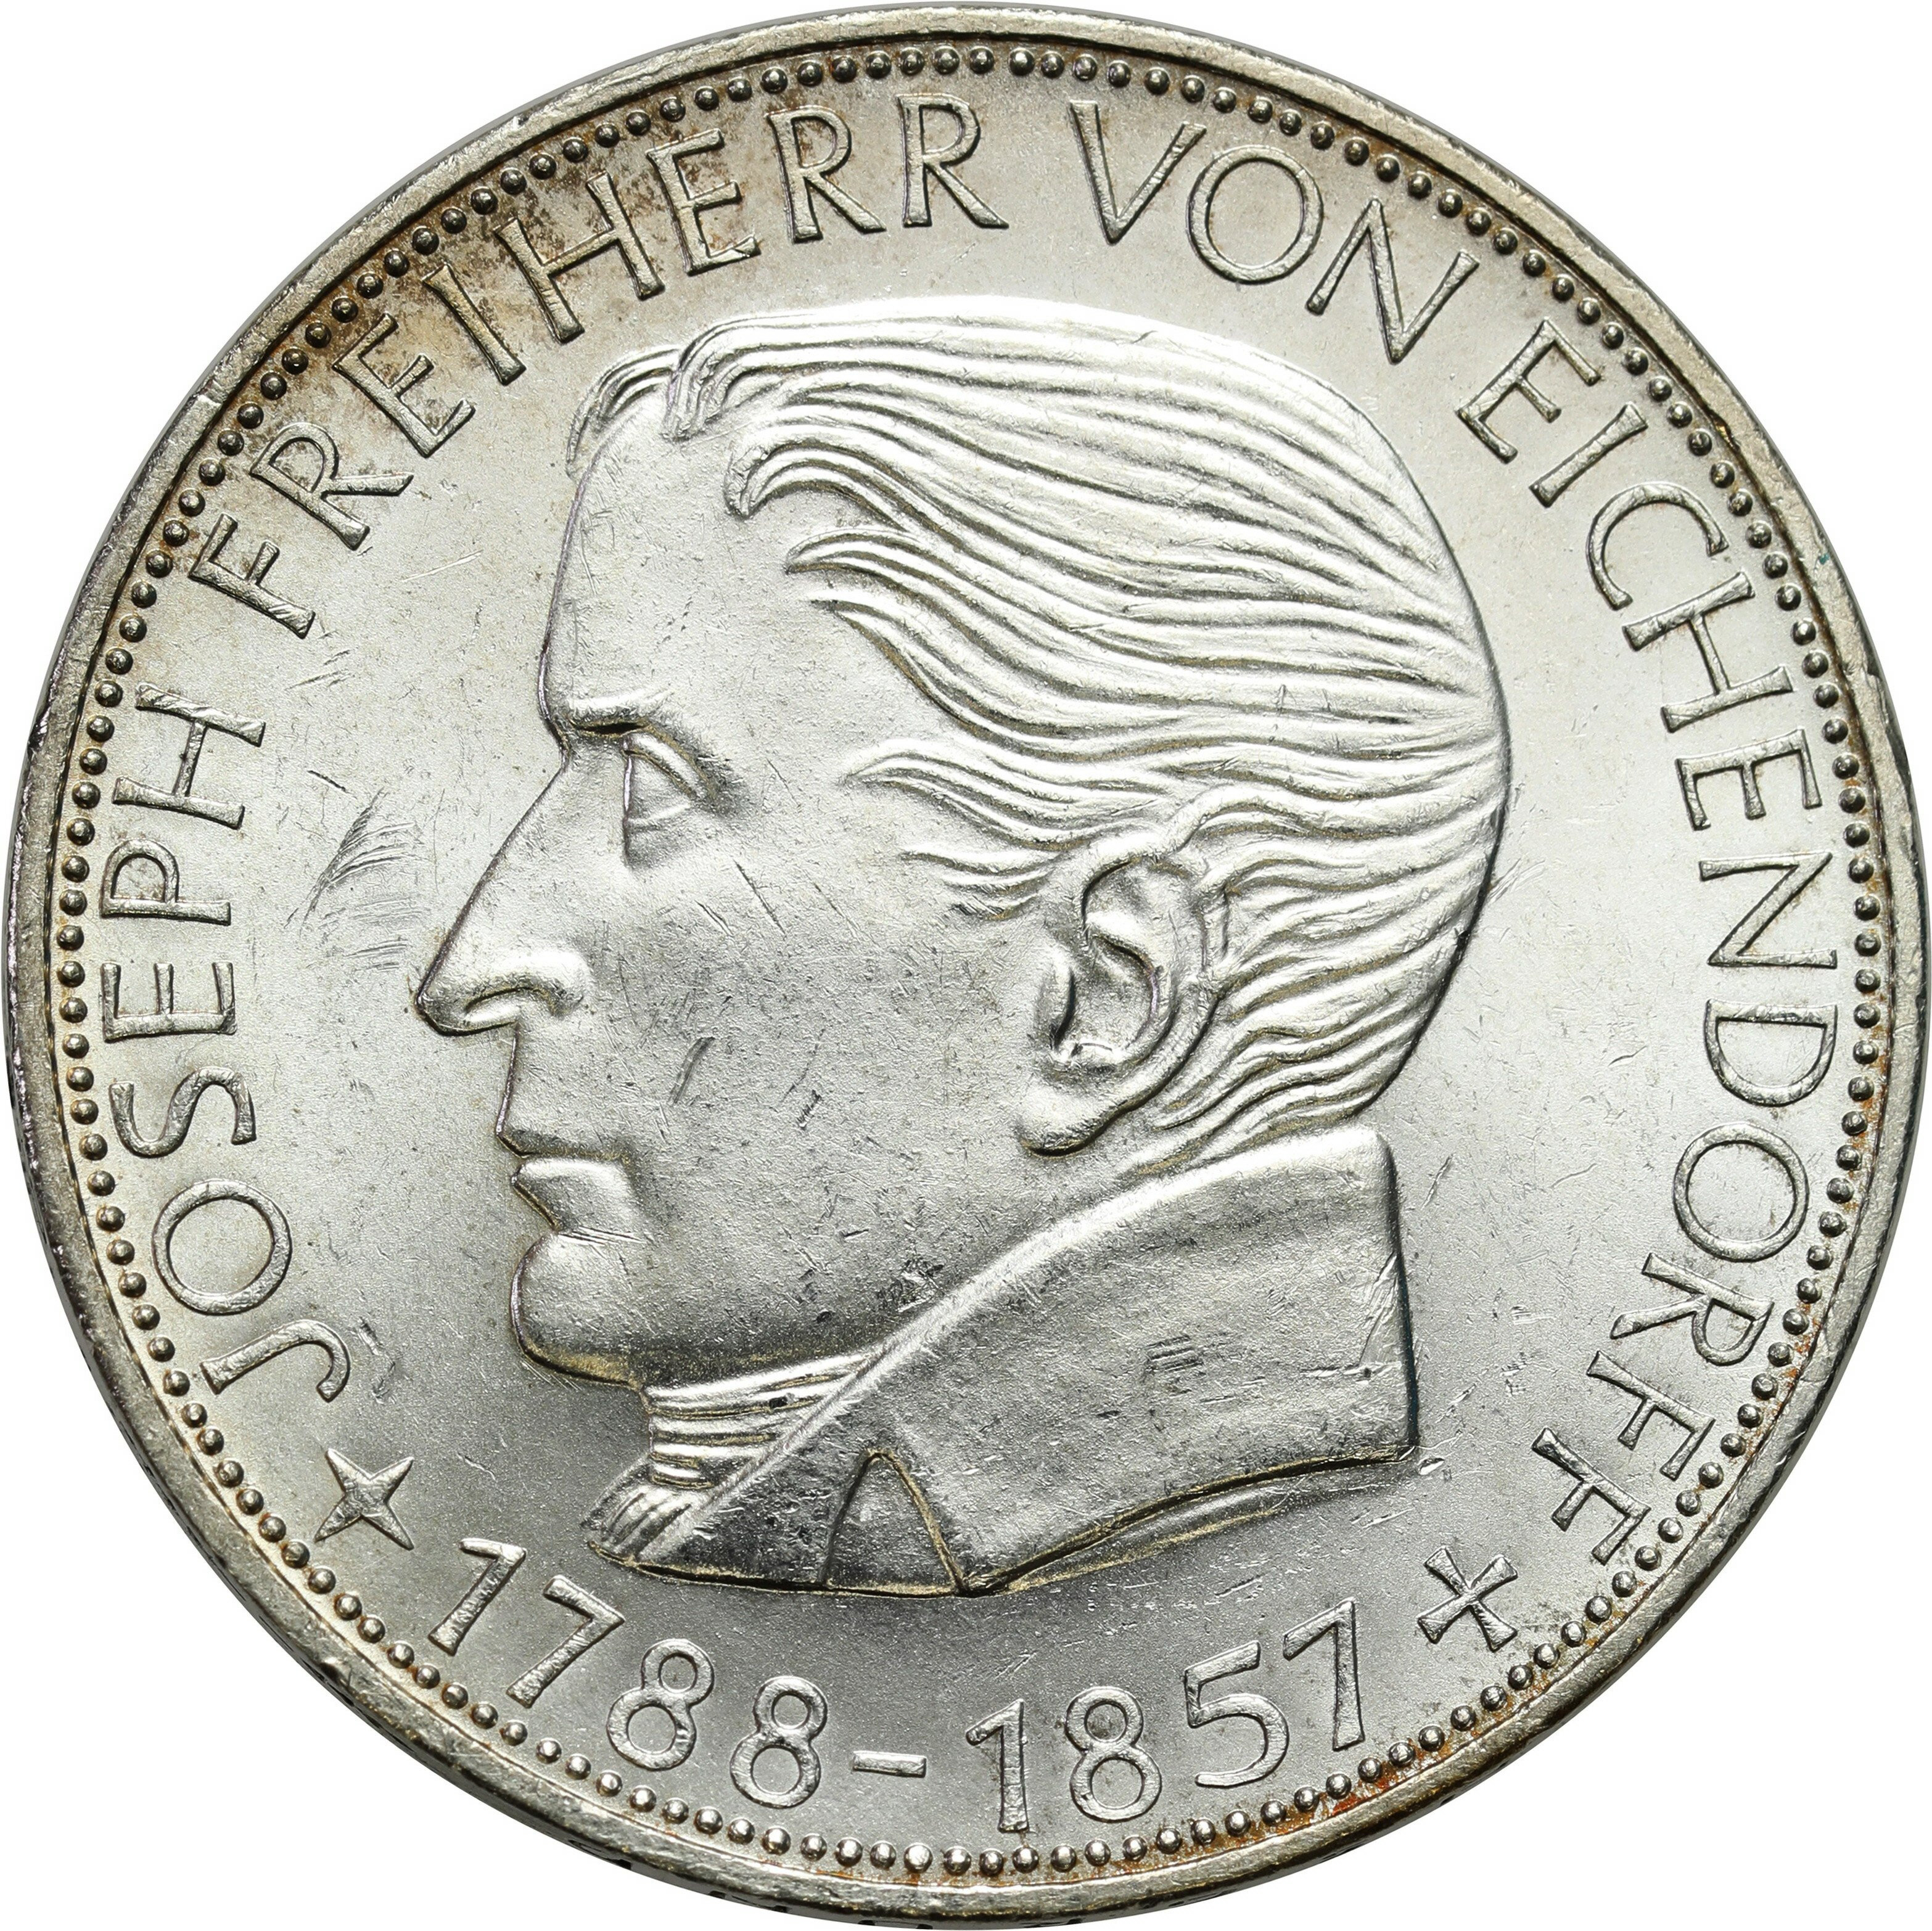 Niemcy, RFN. 5 marek 1957 J, Hamburg, 100. rocznica śmierci Józefa Freiherr von Eichendorff – RZADKIE